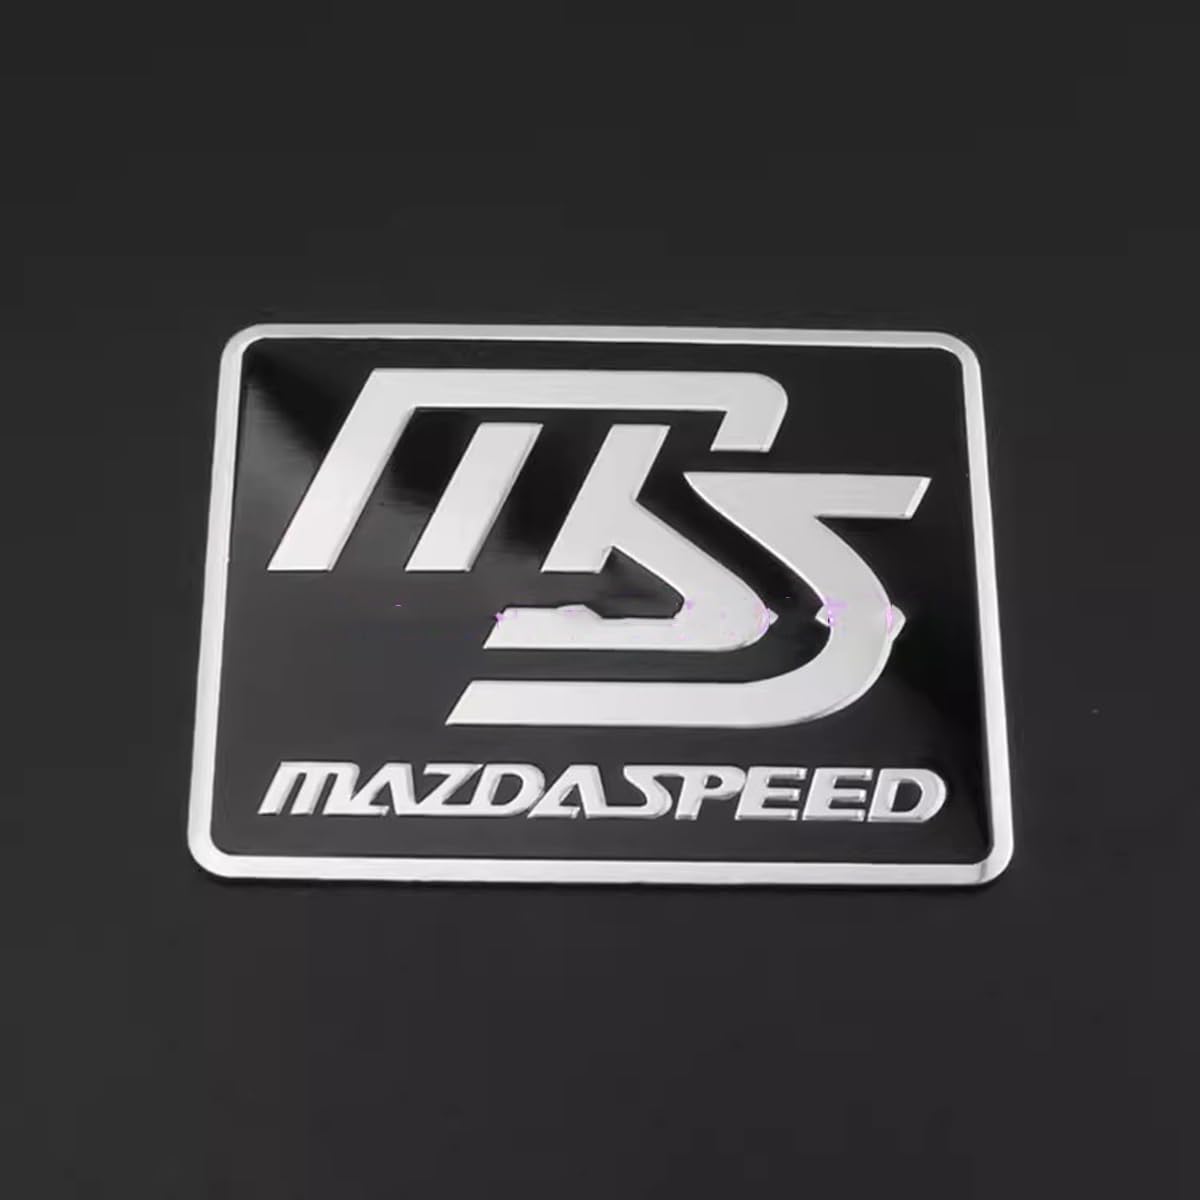 3D Metall Auto Aufkleber für Mazda CX5 CX7 CX9 CX-5 CX3 MX-5 Protege Valet Rx8 Series, Selbstklebend Emblem Badge Abzeichen für Heckklappe Kofferraum zubehör,black-B von LNLMY